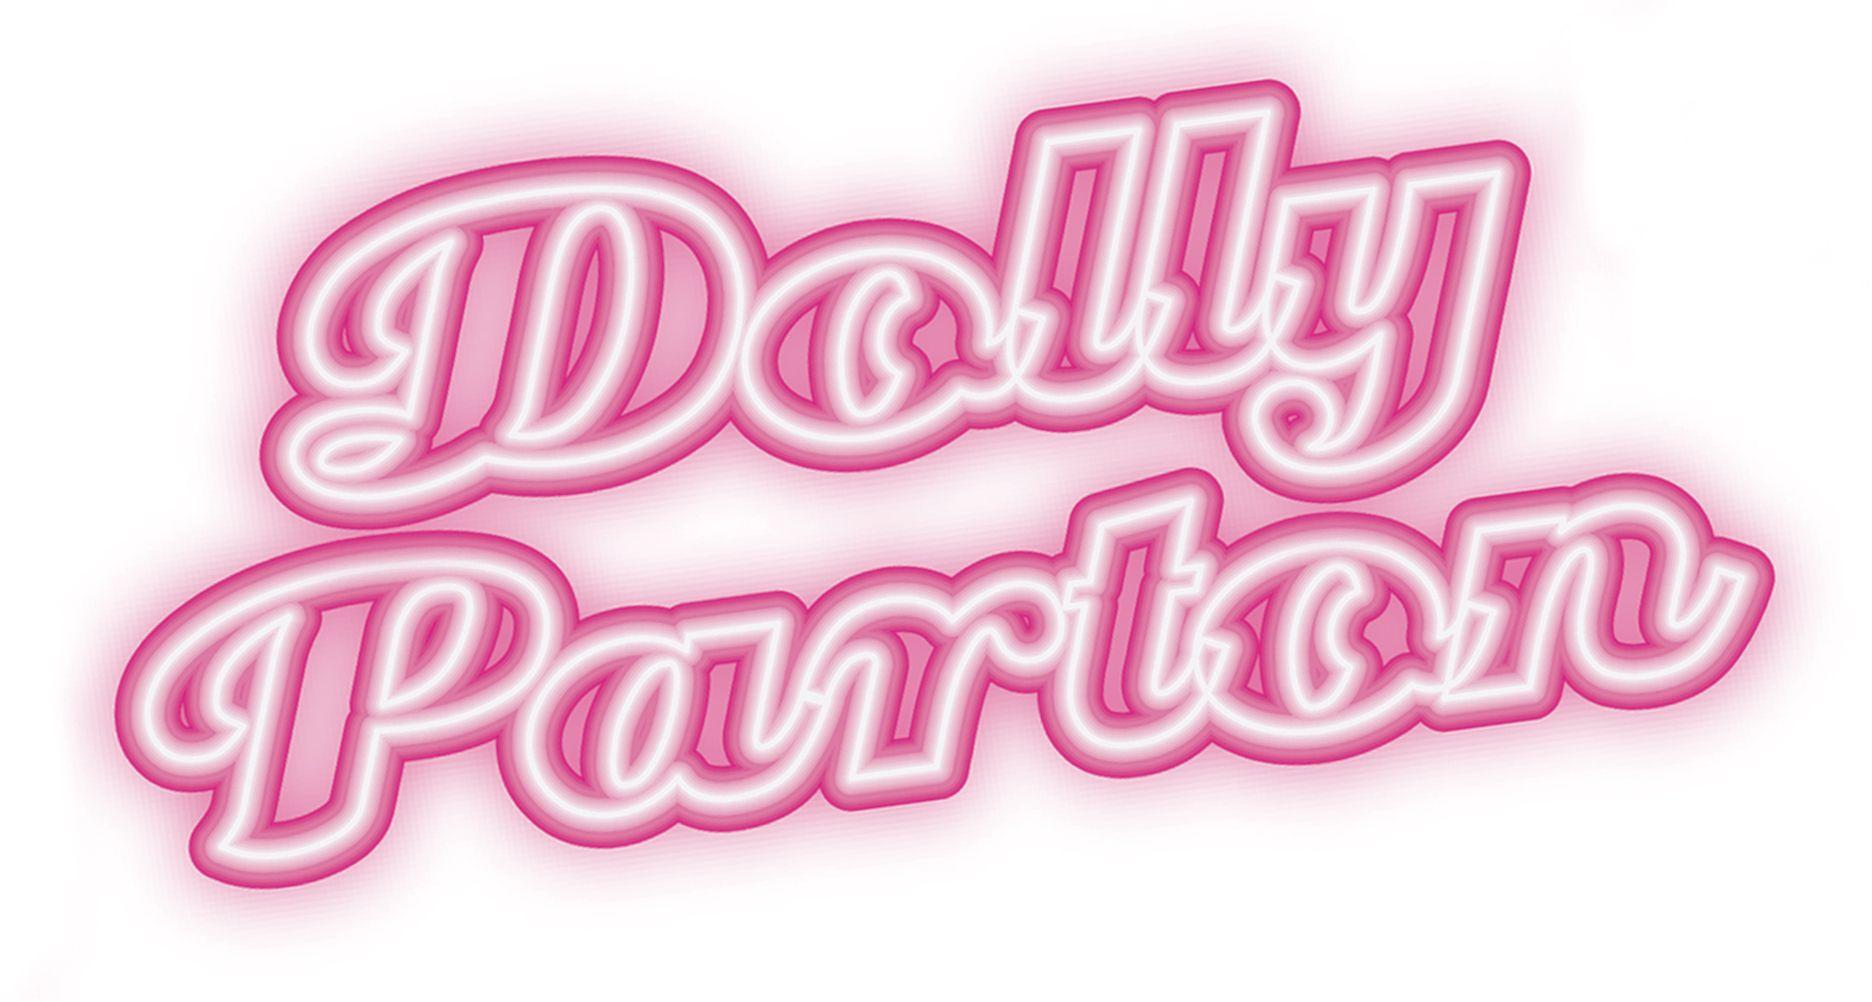 Dolly Parton Logo - News